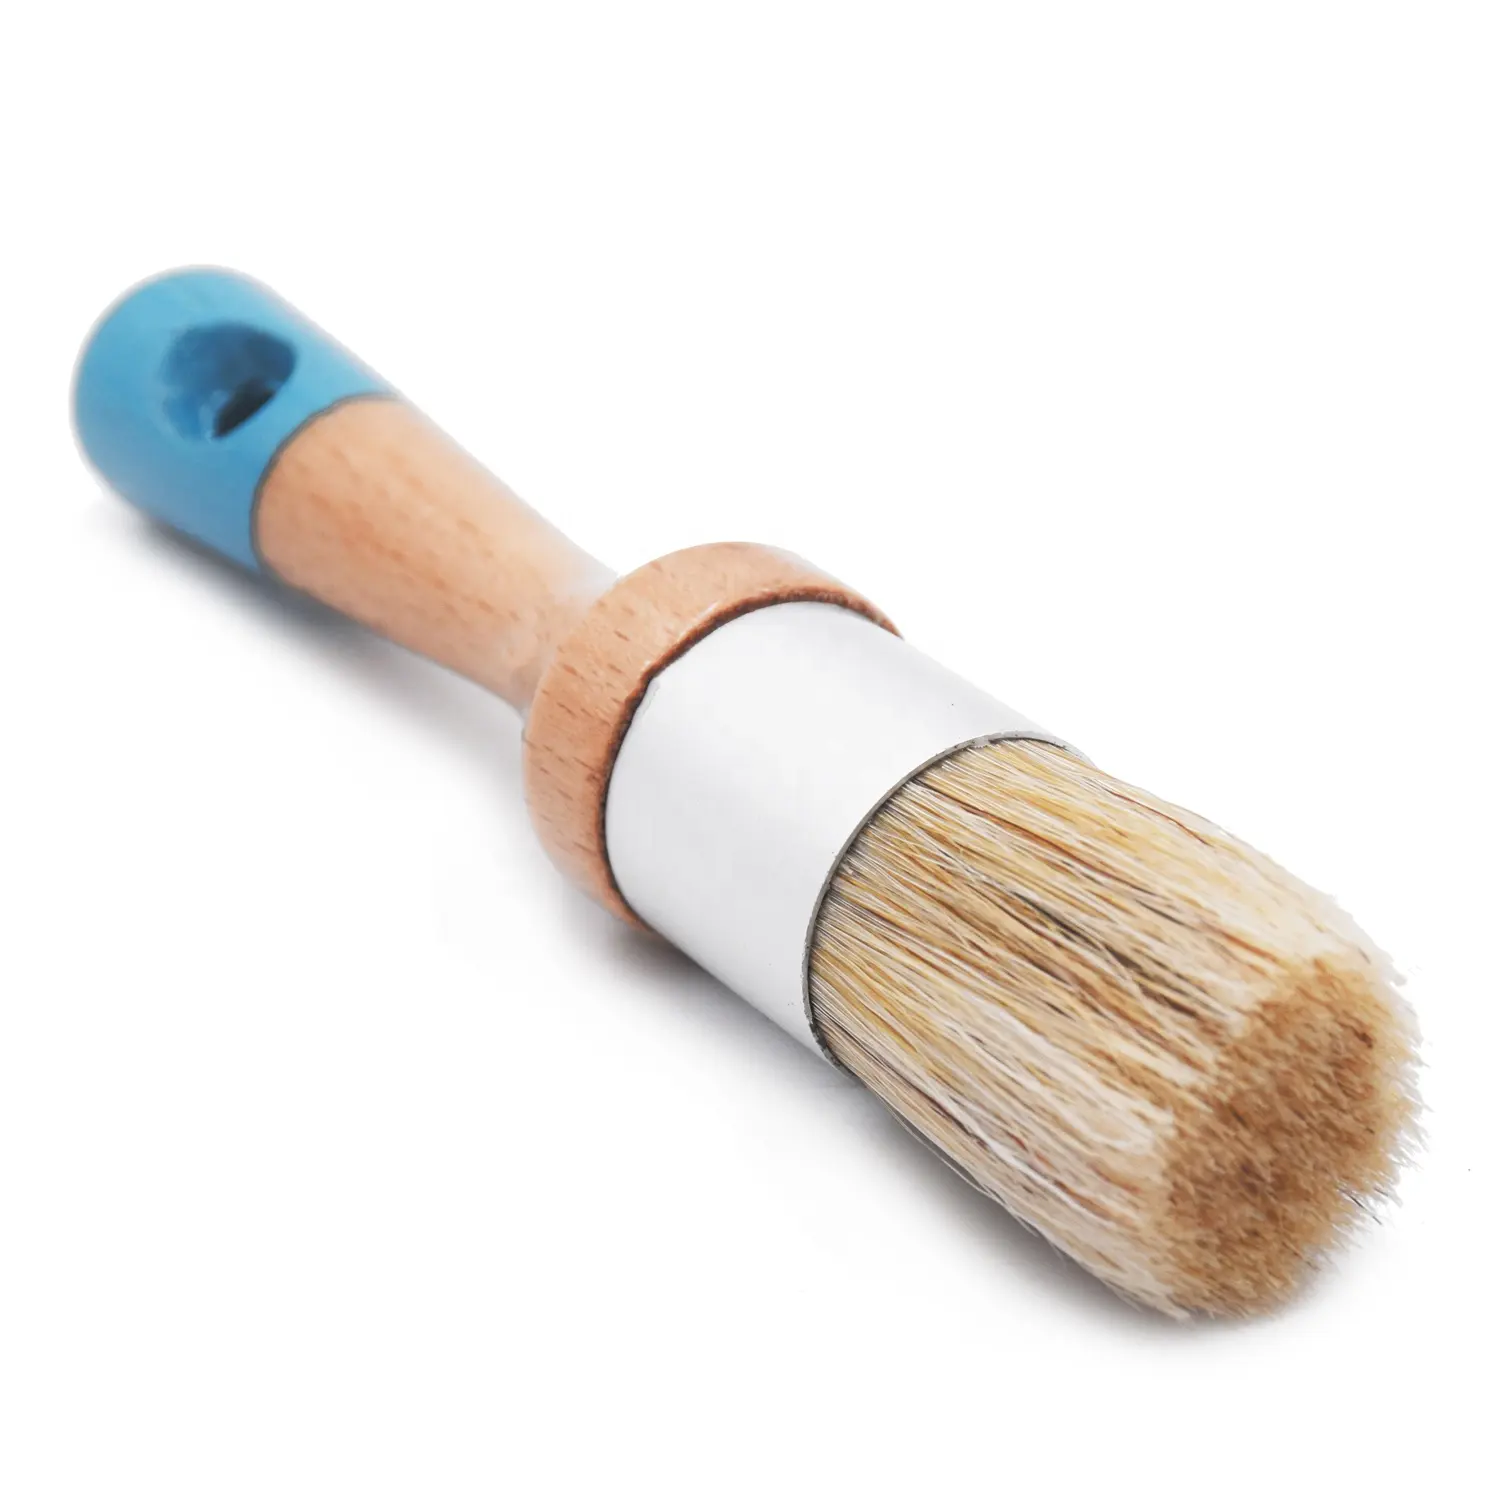 Yuvarlak kafa ahşap saplı fırça yağlı boya fırçası renk boyama fırçası